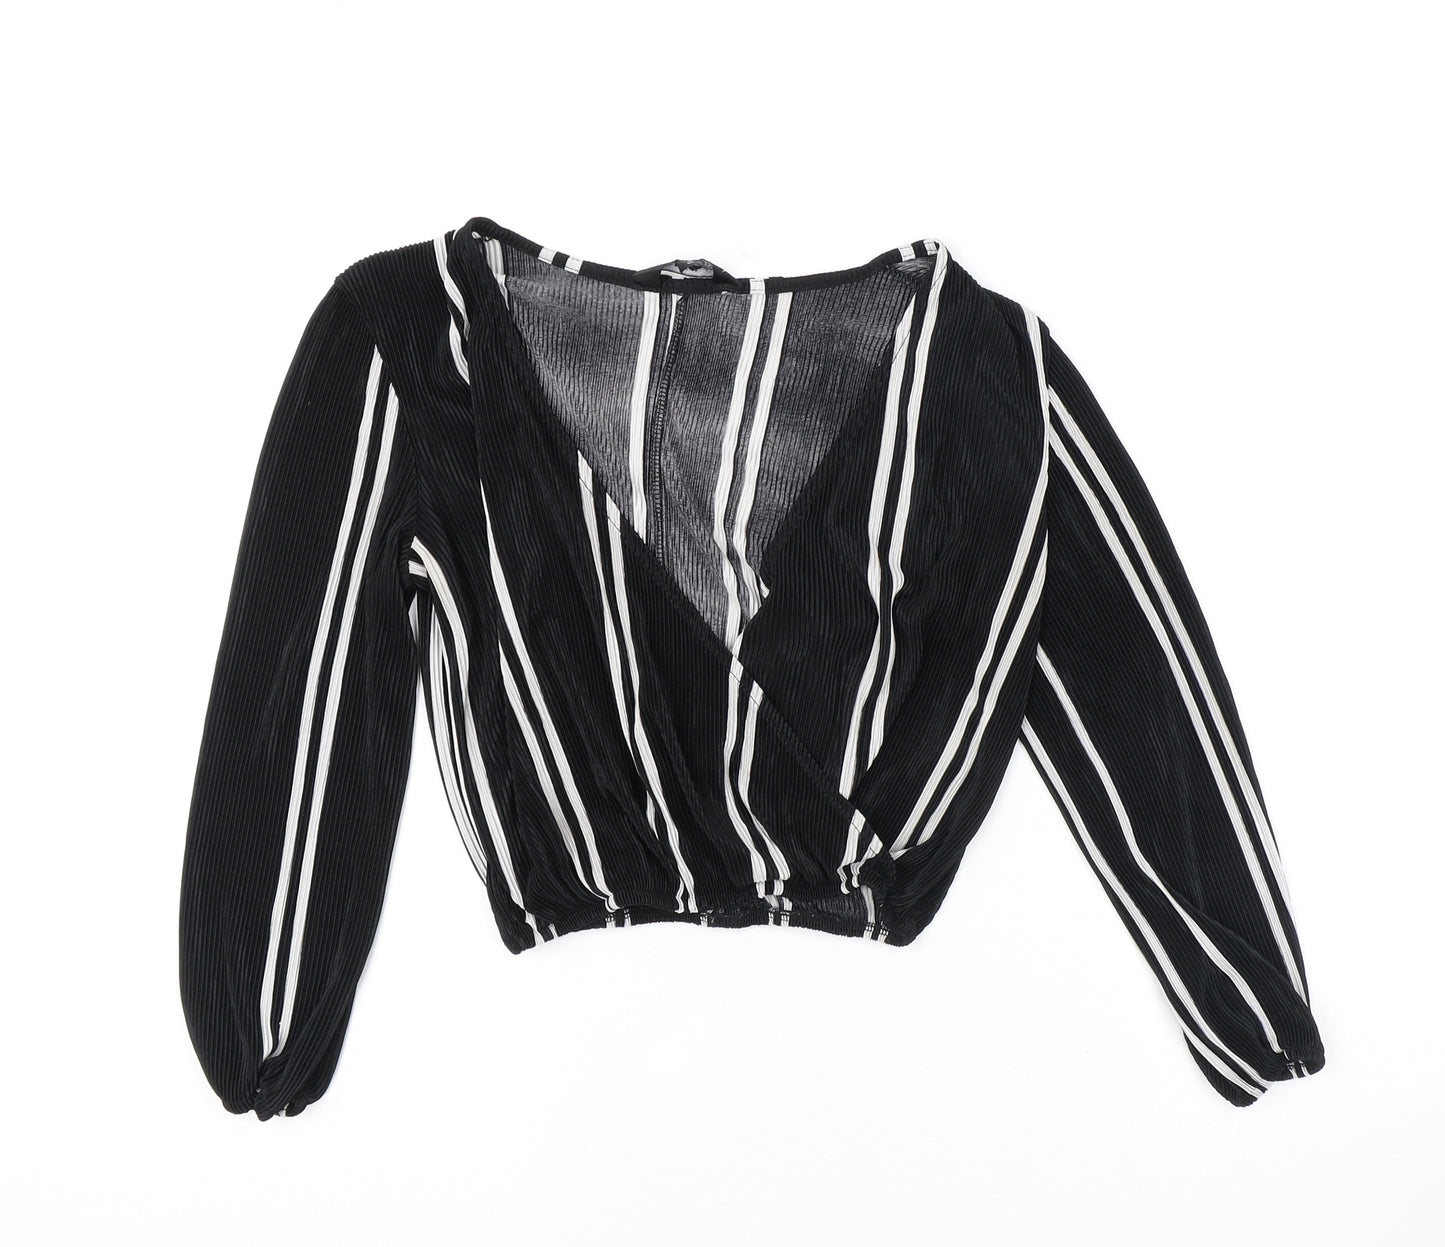 Miss Selfridge Womens Black Striped Polyester Basic Blouse Size 8 V-Neck